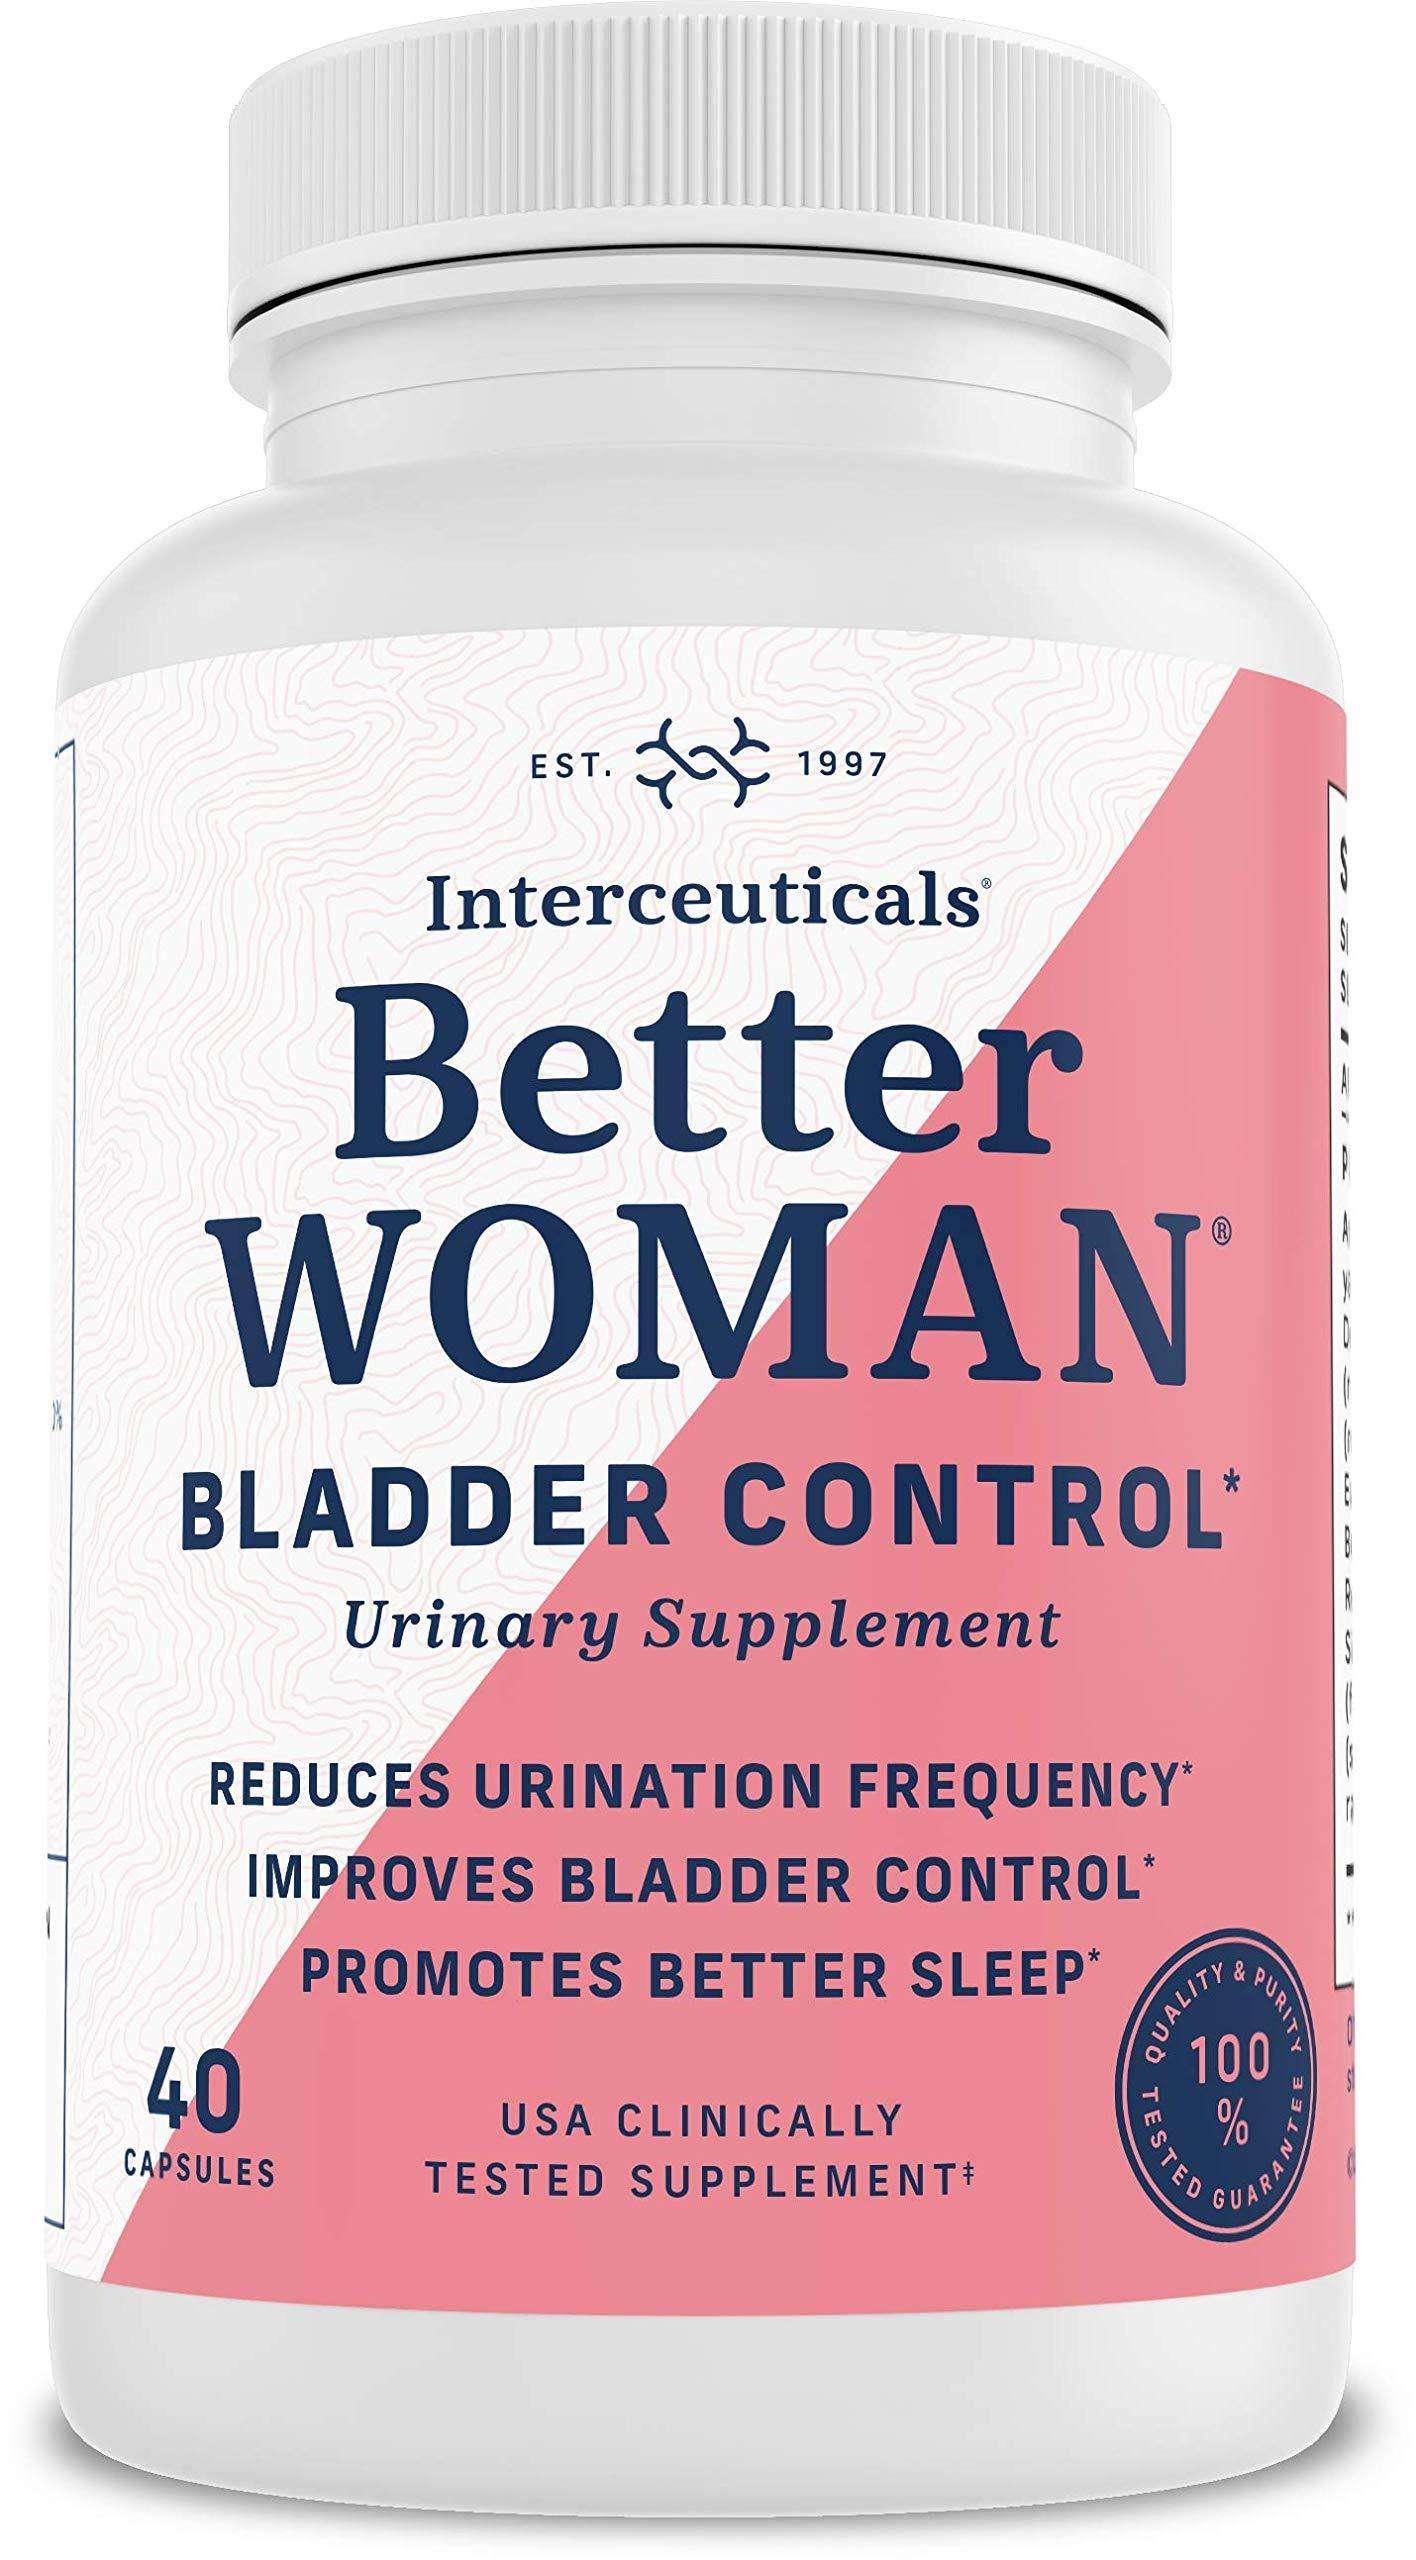 BetterWOMAN Bladder Control Supplement for Women